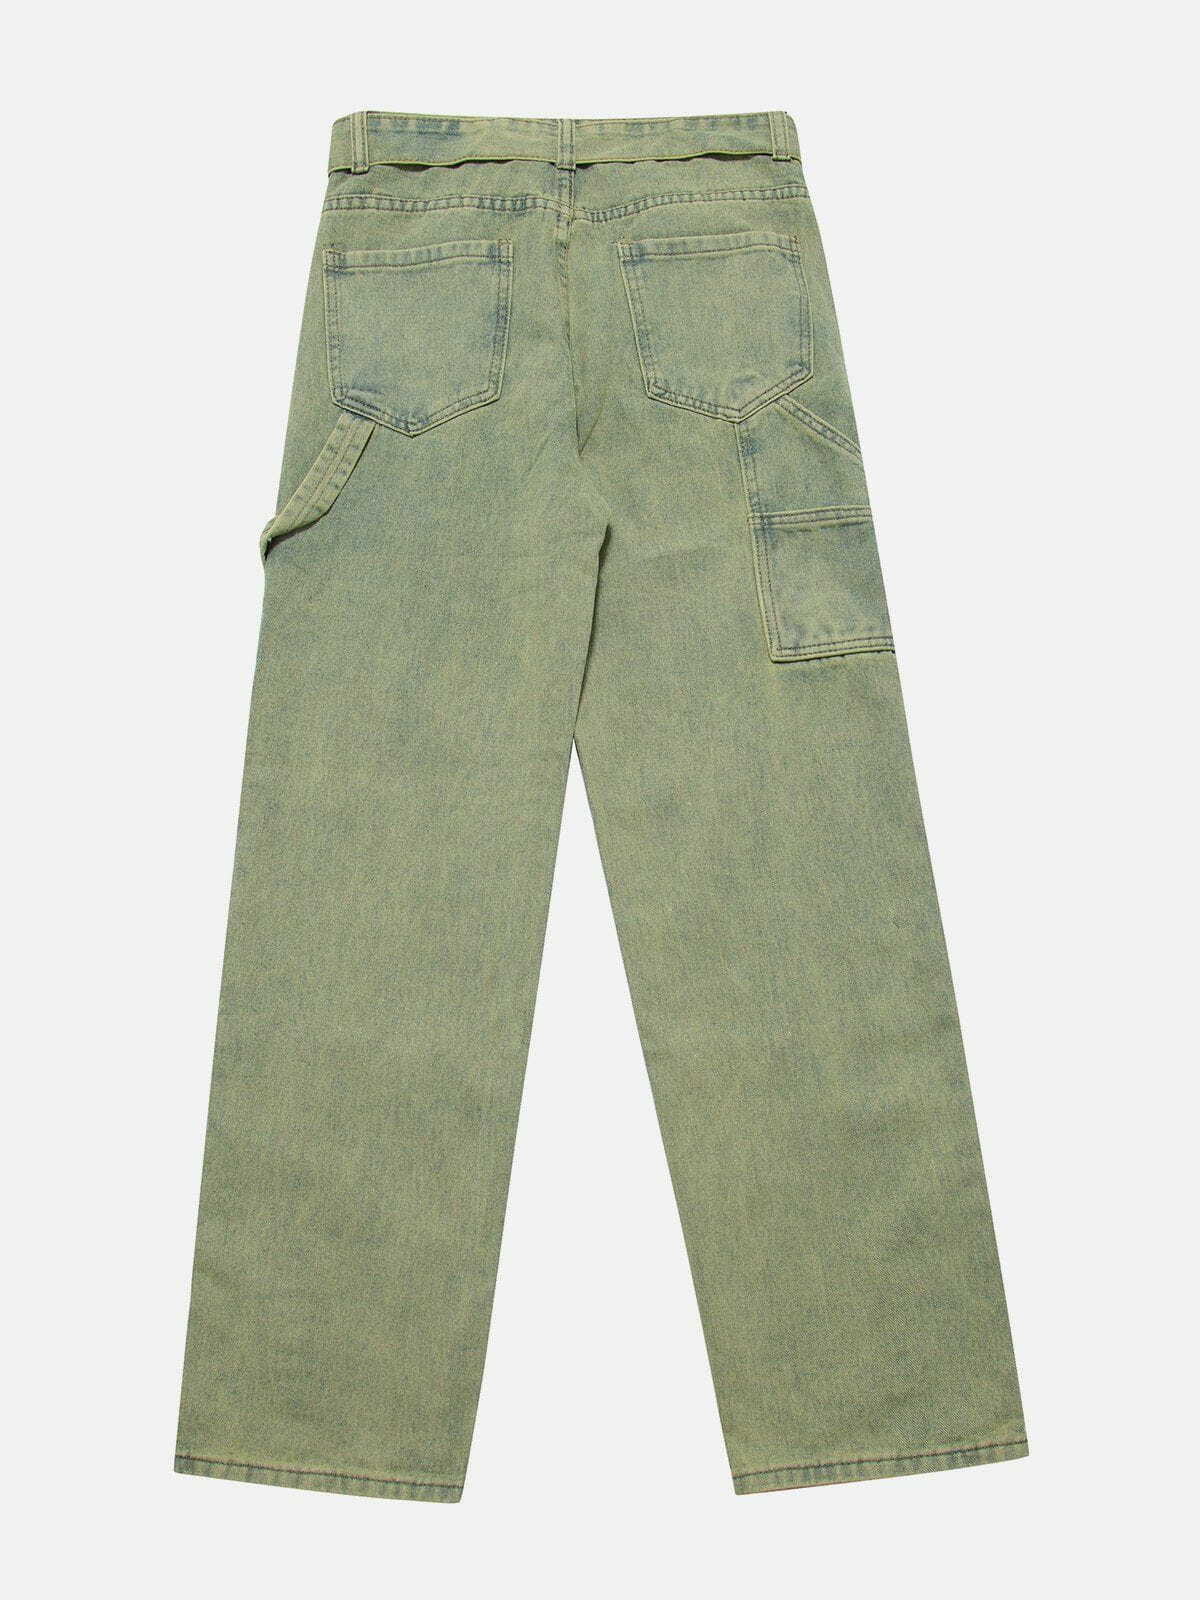 retro washed button slit jeans edgy & stylish denim 4059